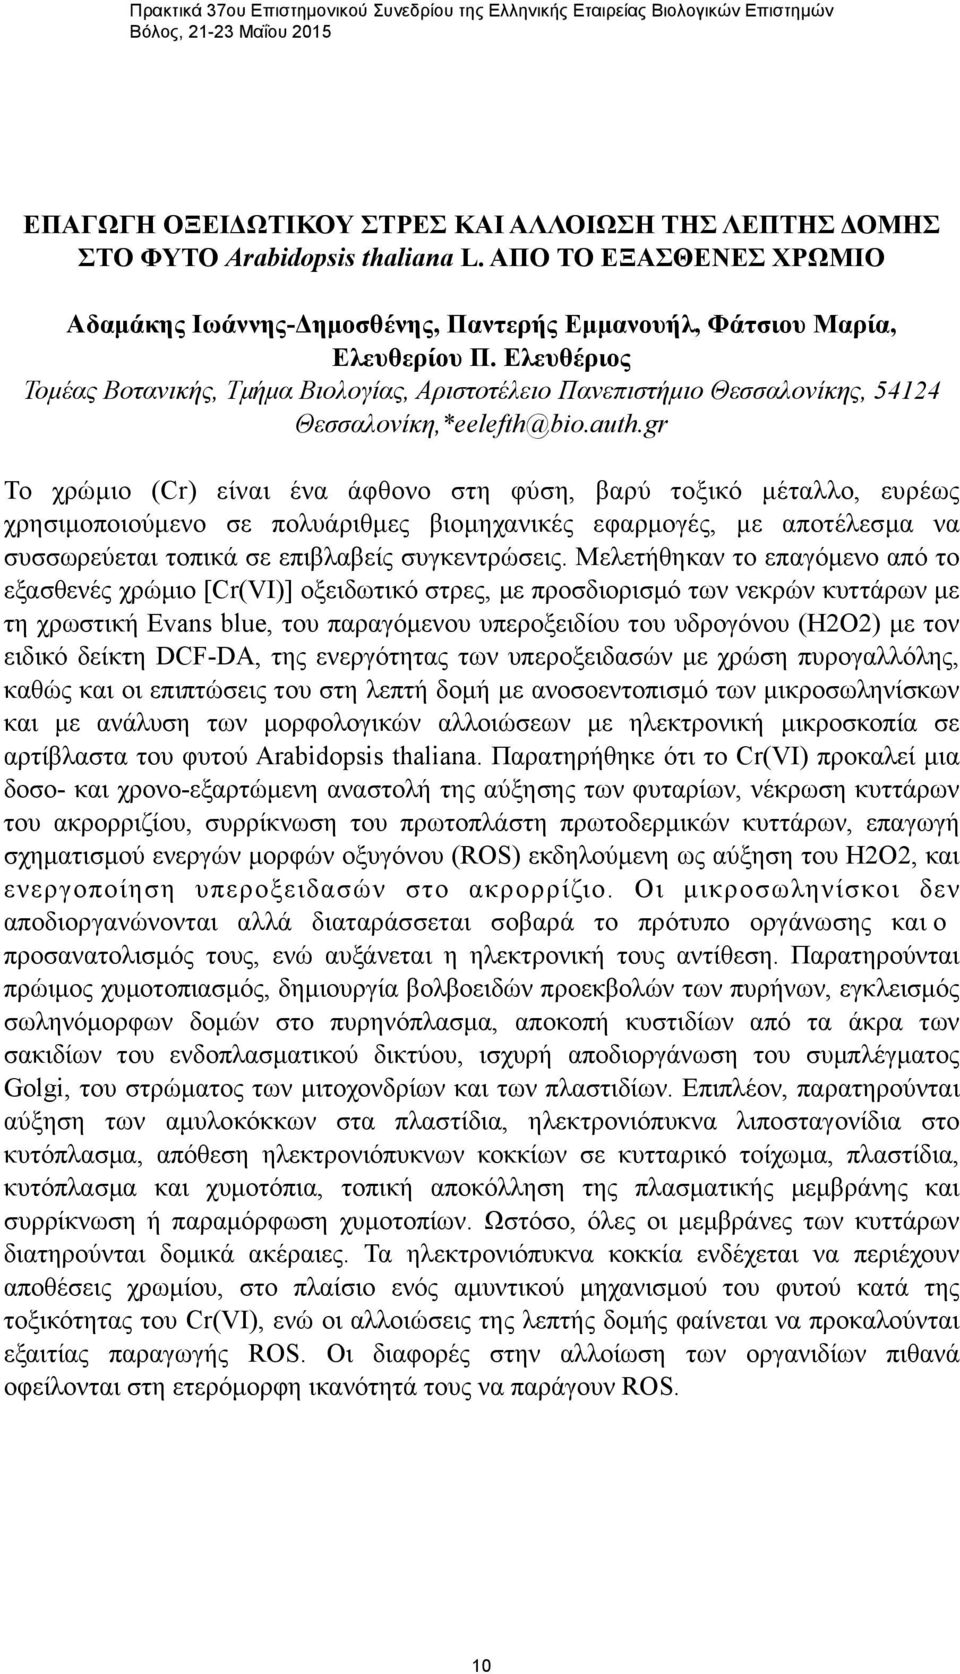 Ελευθέριος Τοµέας Βοτανικής, Τµήµα Βιολογίας, Αριστοτέλειο Πανεπιστήµιο Θεσσαλονίκης, 54124 Θεσσαλονίκη,*eelefth@bio.auth.